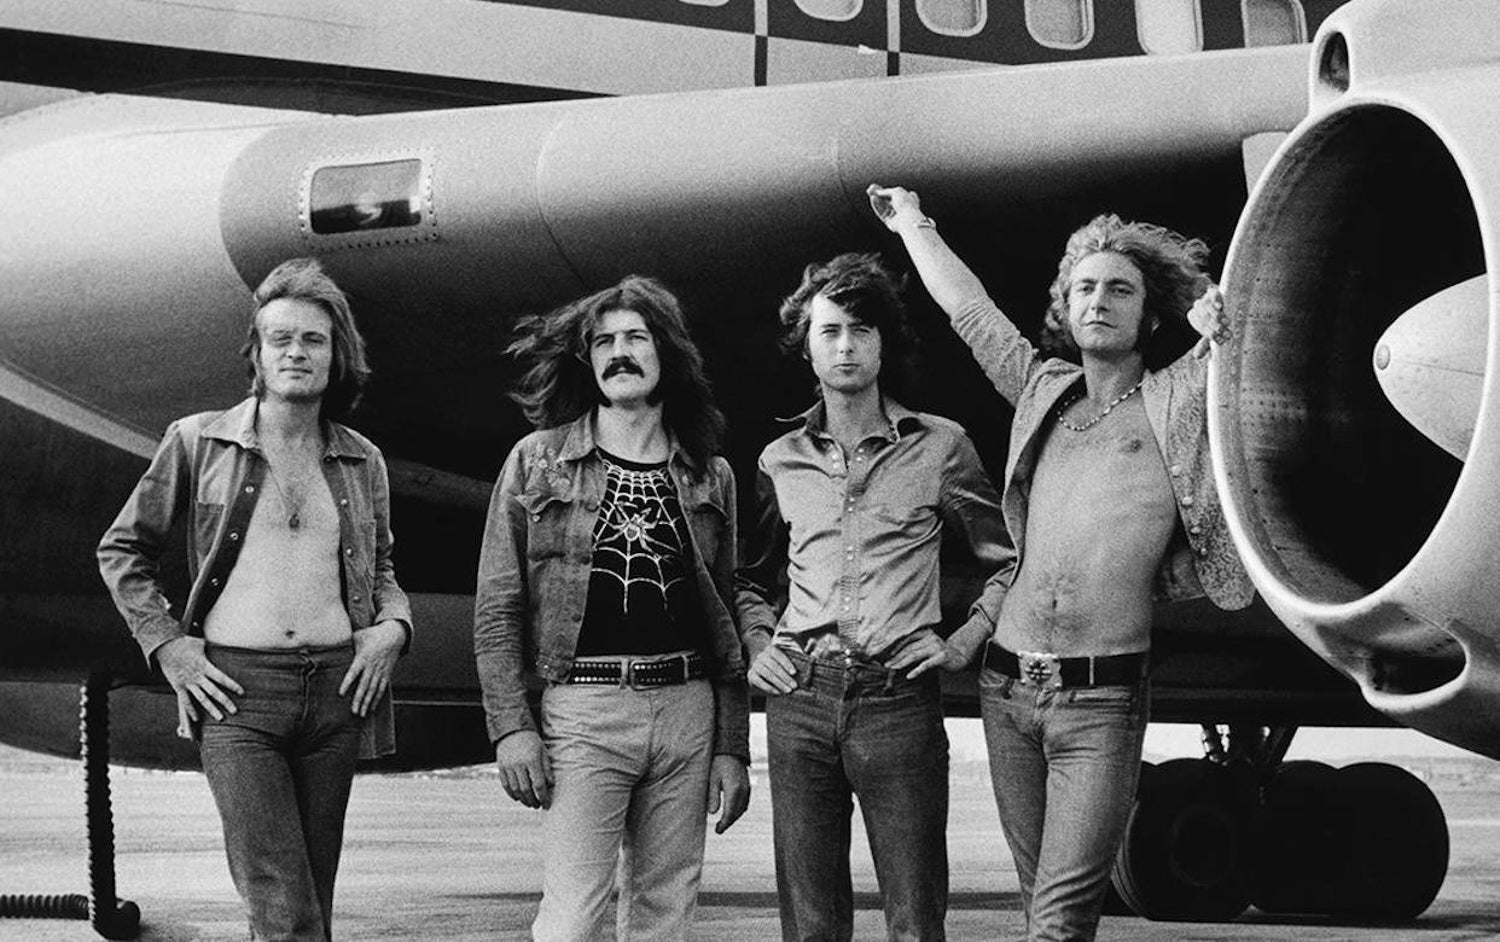 Bob Gruen - Led Zeppelin "Plane" at 1stDibs